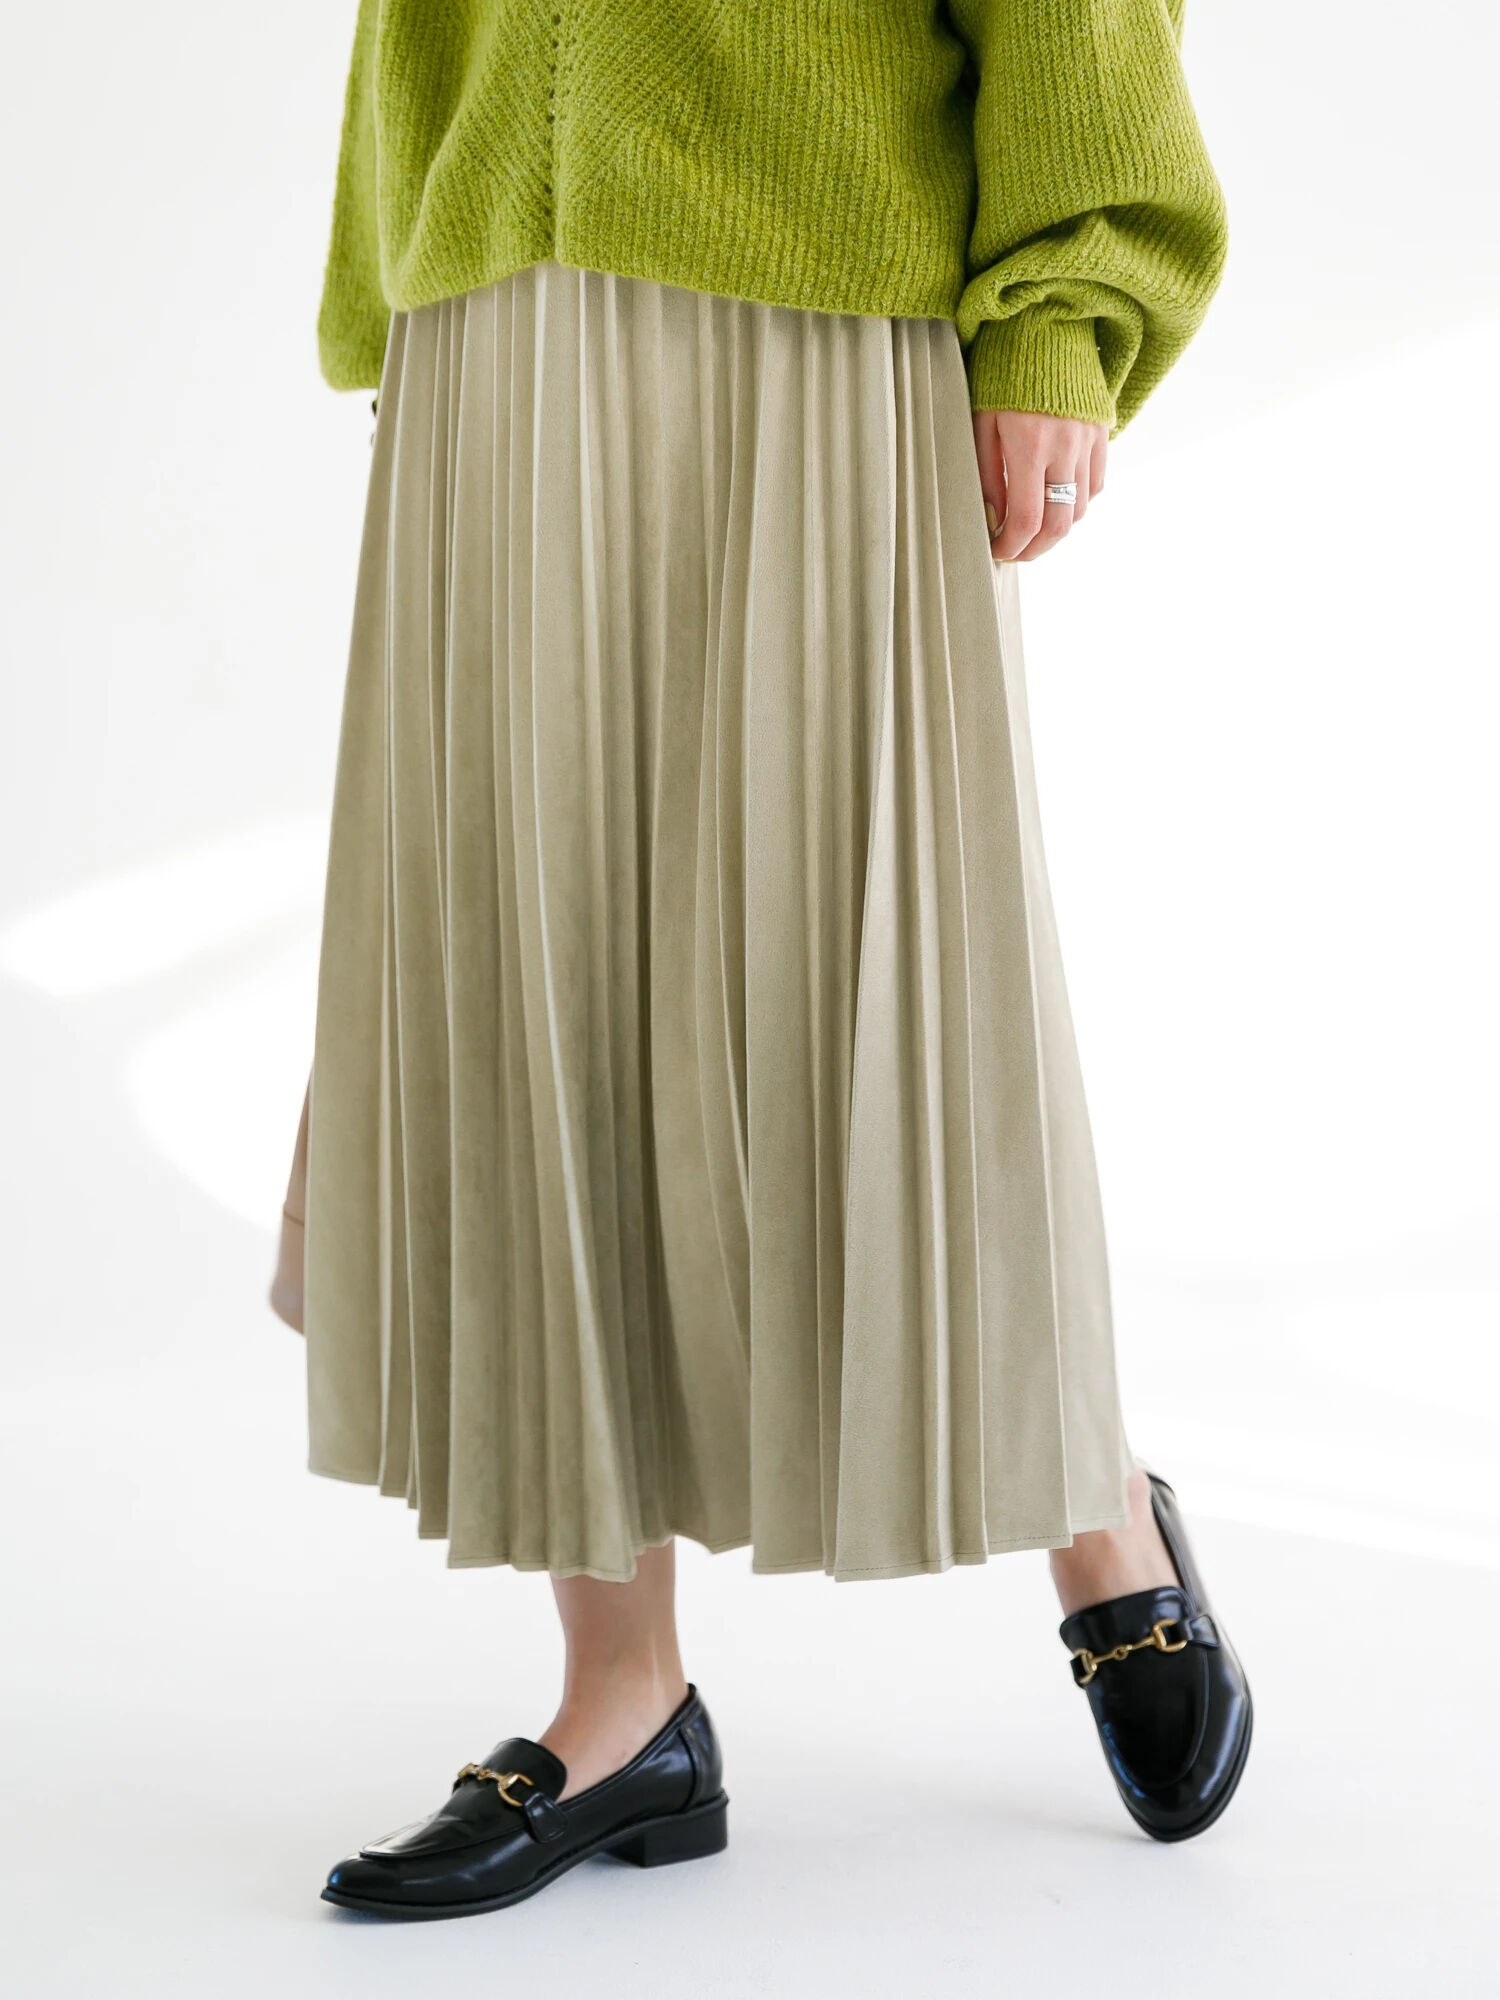 変形アコーディオンプリーツスカート / koe(コエ)のスカート ファッション通販のSTRIPE CLUB